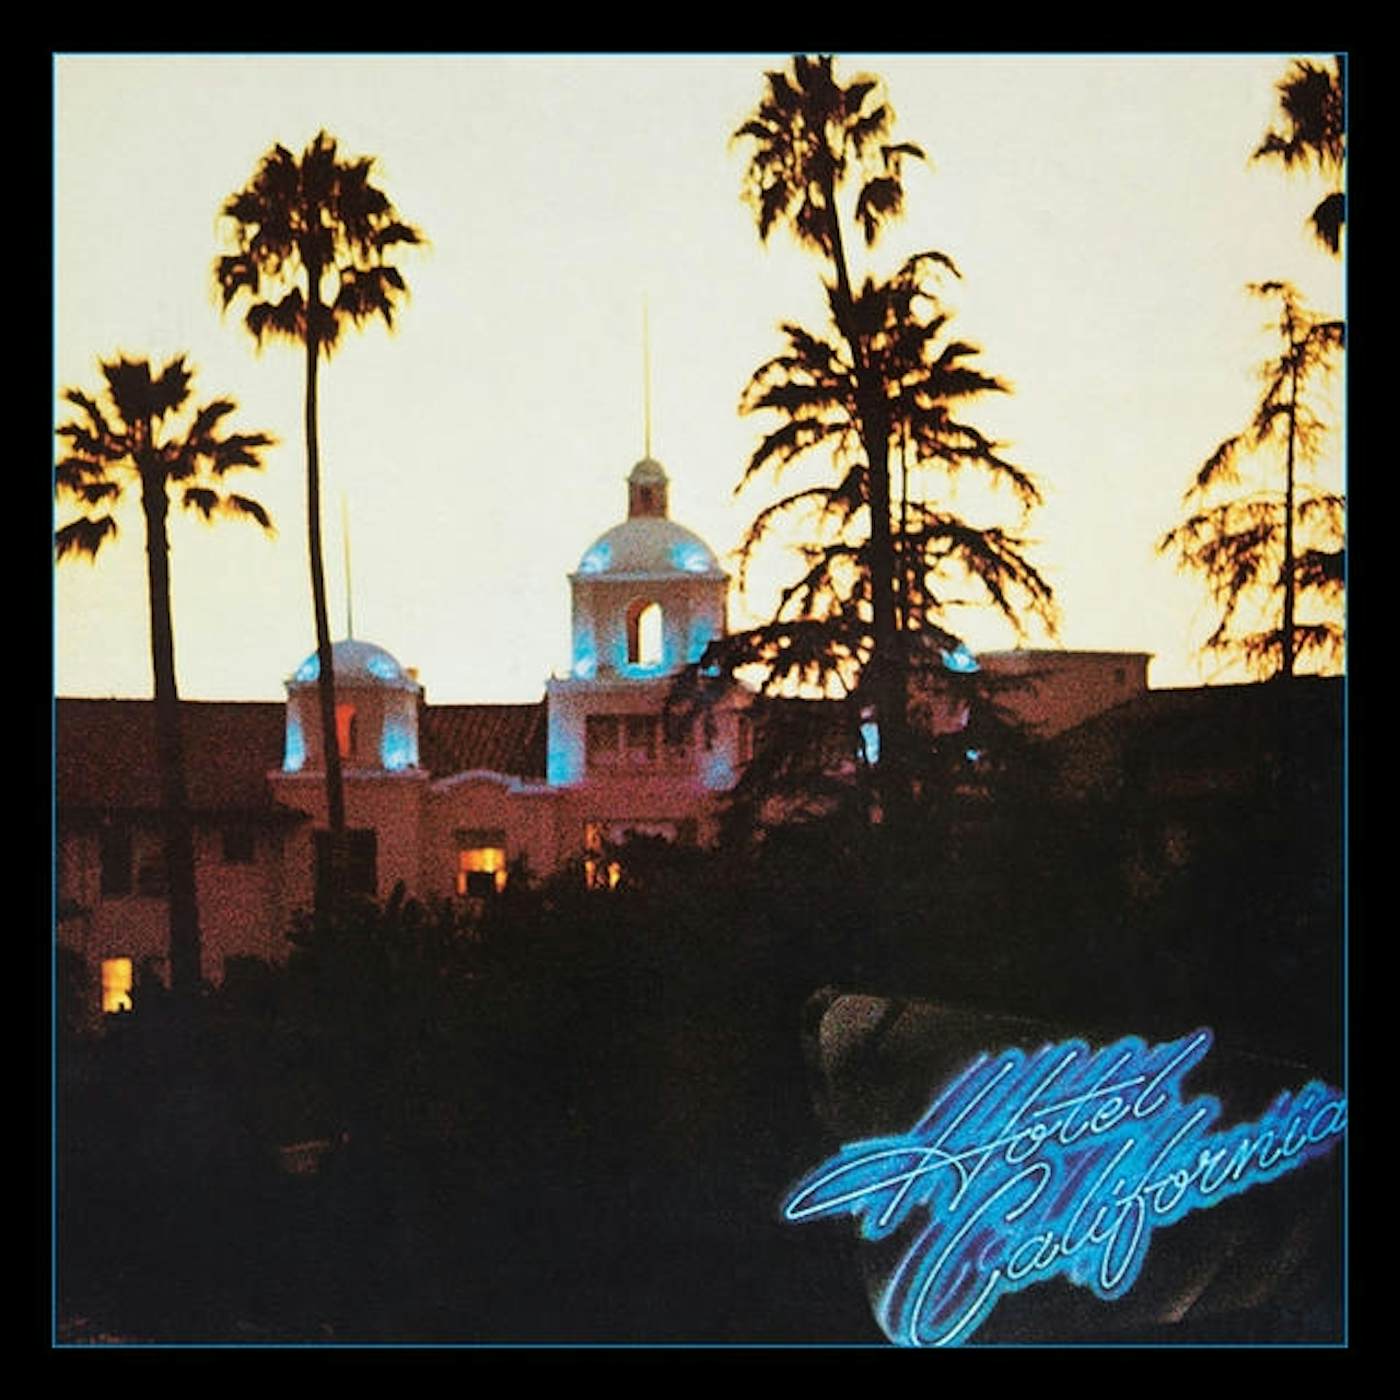 Eagles Hotel California: 40th Anniversary Deluxe Edition (2CD/1Bluray)